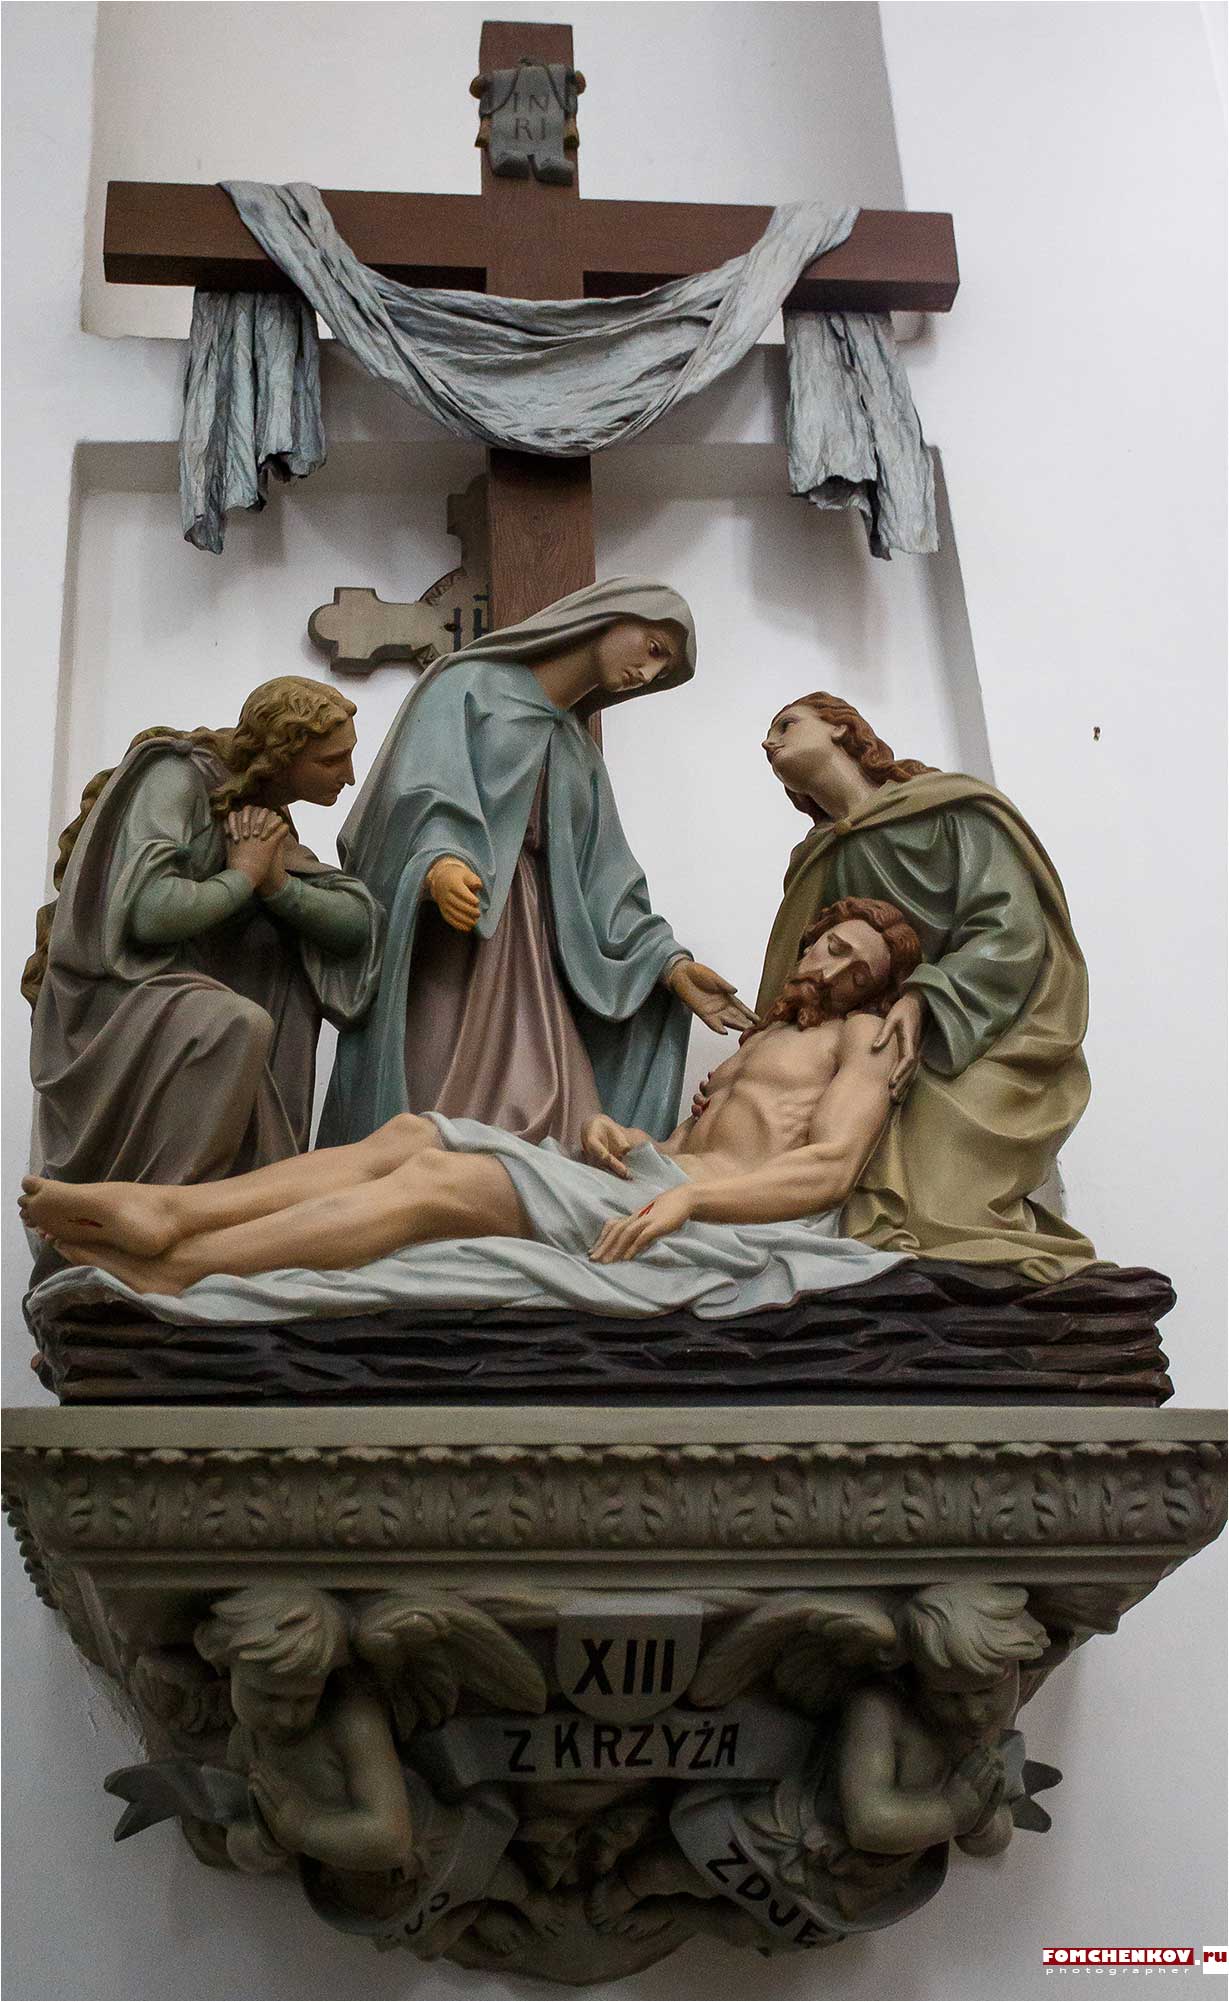 Главный католический собор Гродно — Кафедральный костёл Св. Франциска Кесаверия